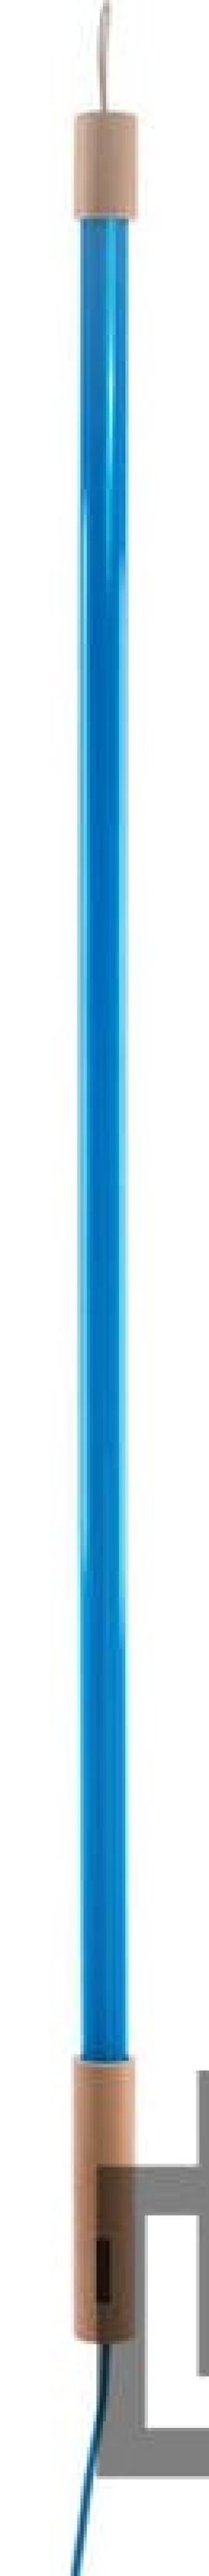 Lampa led linea 134,5 cm niebieska na raty